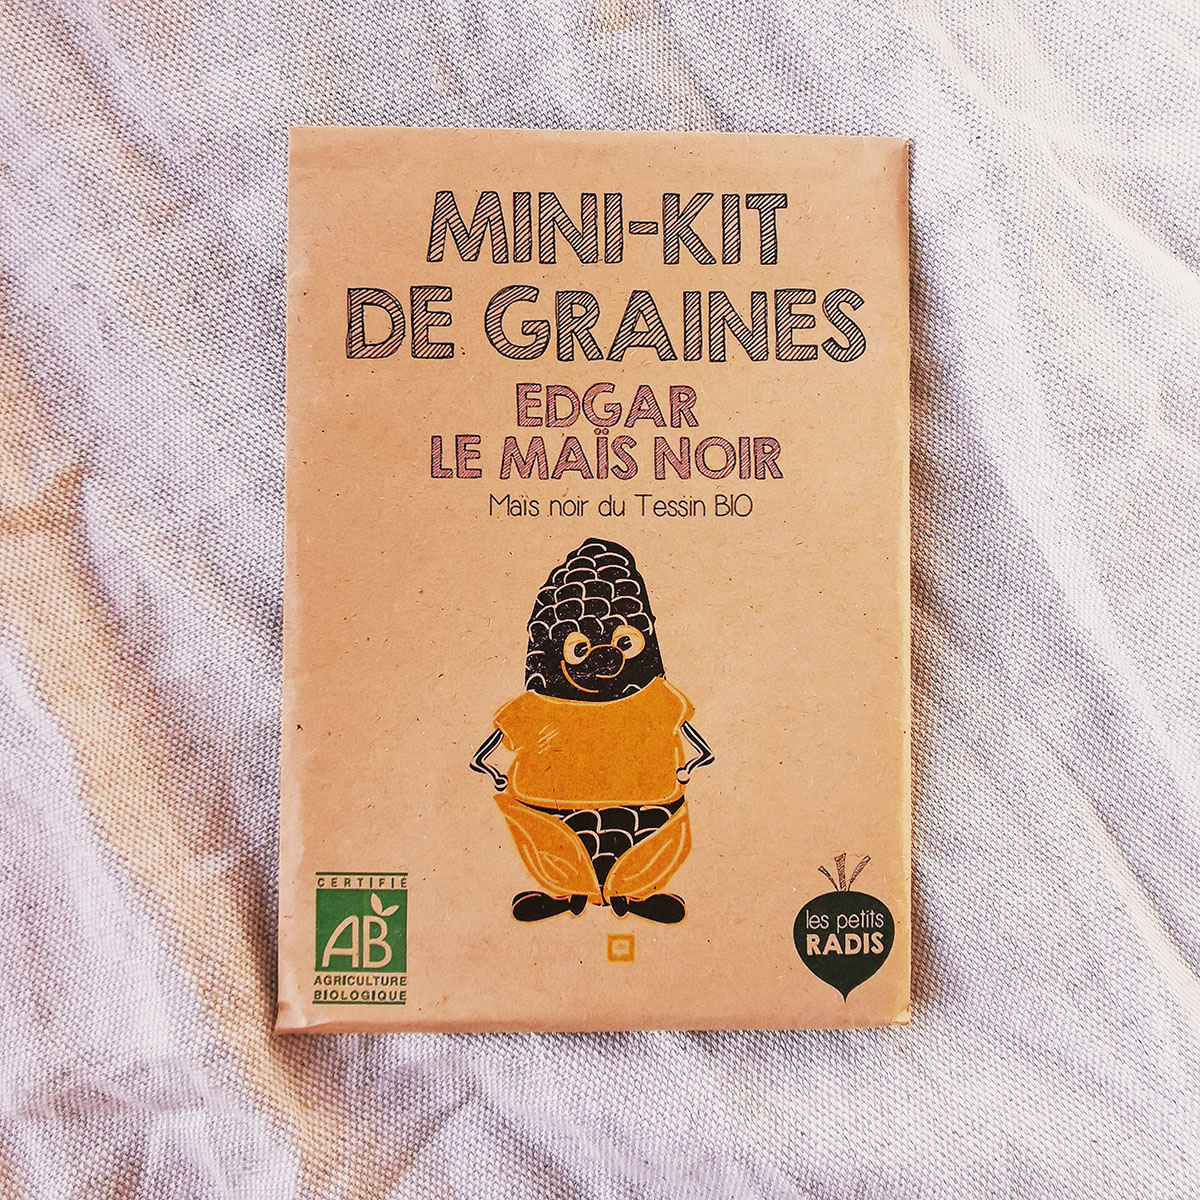 Mini kit de graines bio de Edgar le maïs noir